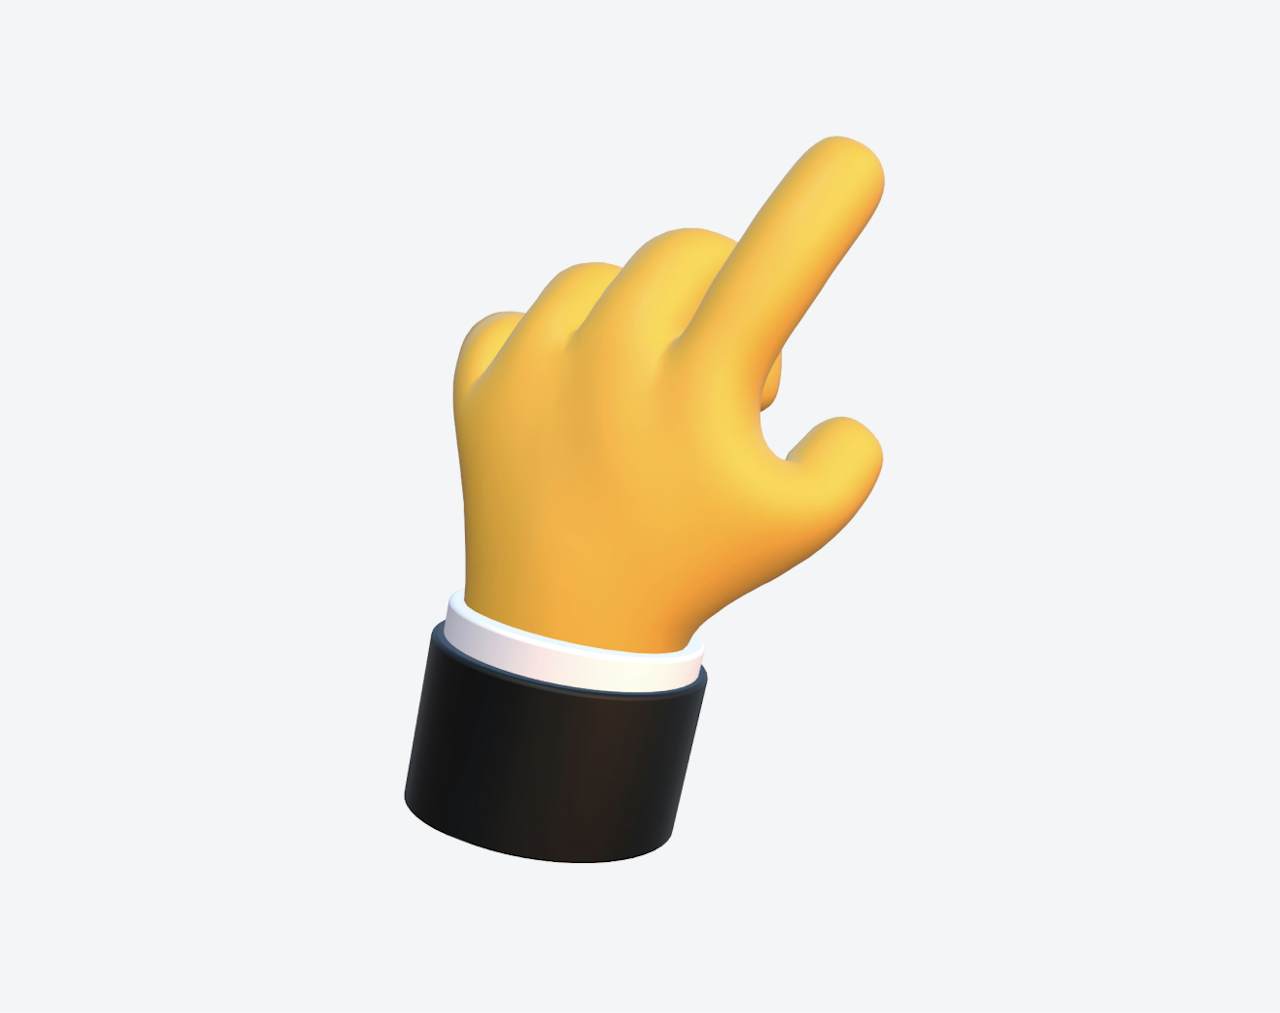 Pointing emoji hand element